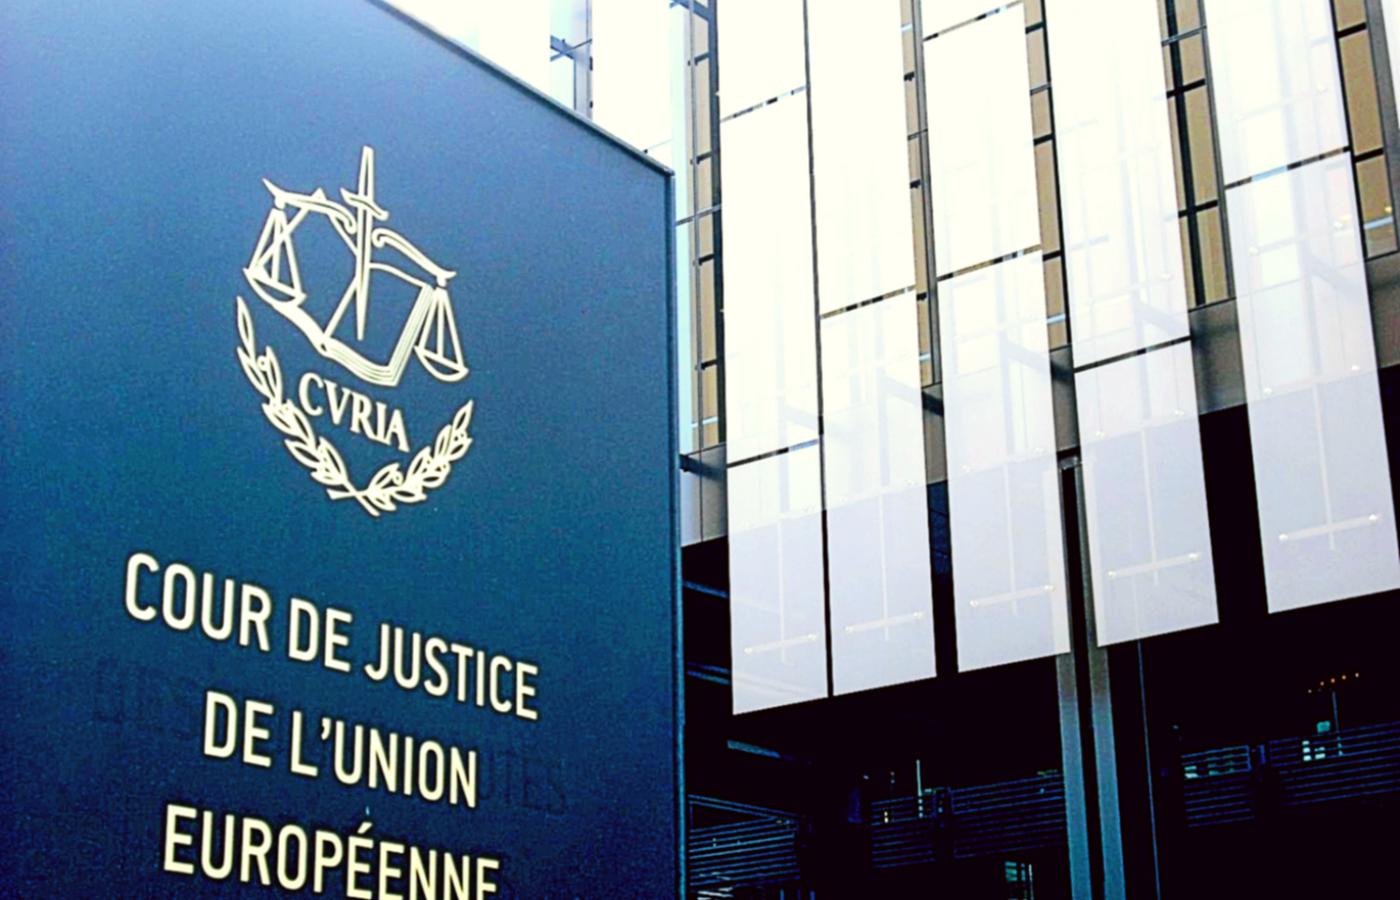 Siedziba Trybunału Sprawiedliwości Unii Europejskiej